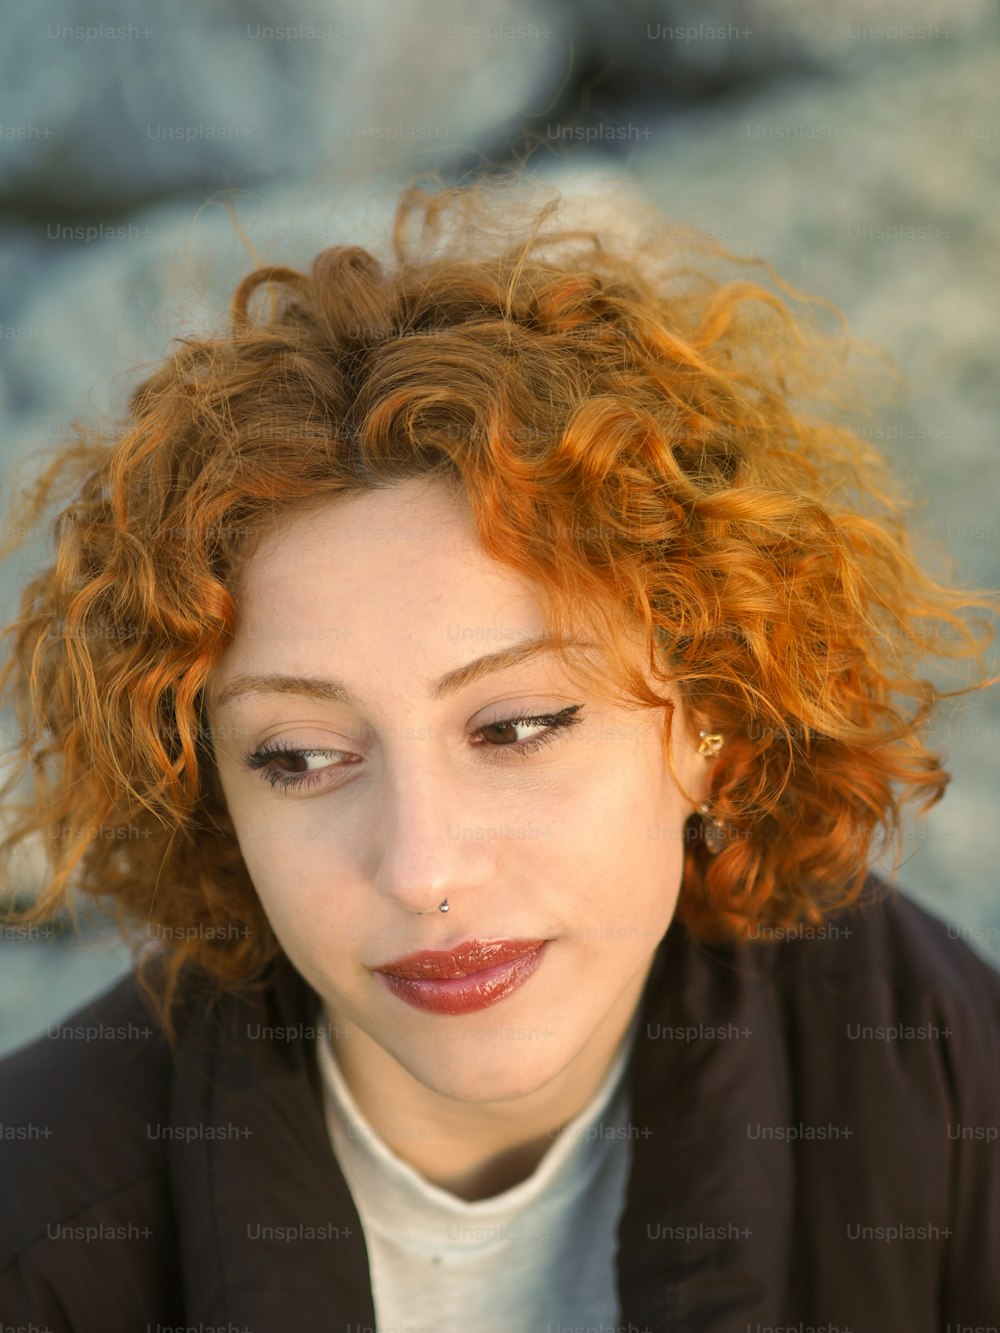 Una persona con i capelli rossi